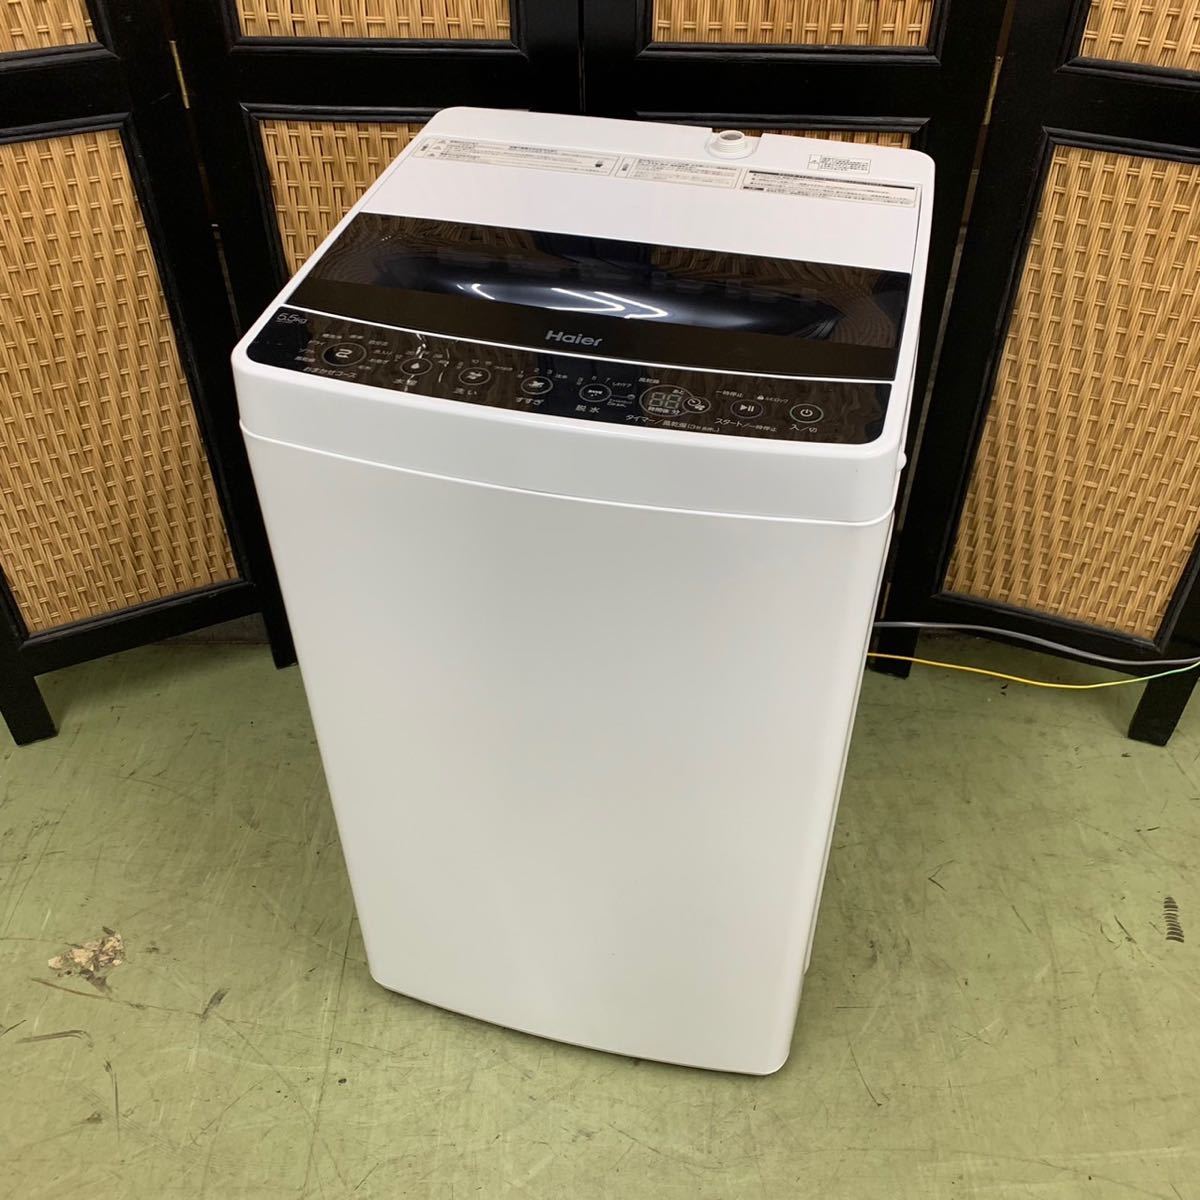 絶品】 名古屋市近郊限定送料設置無料 ハイアール全自動洗濯機4.5kg 